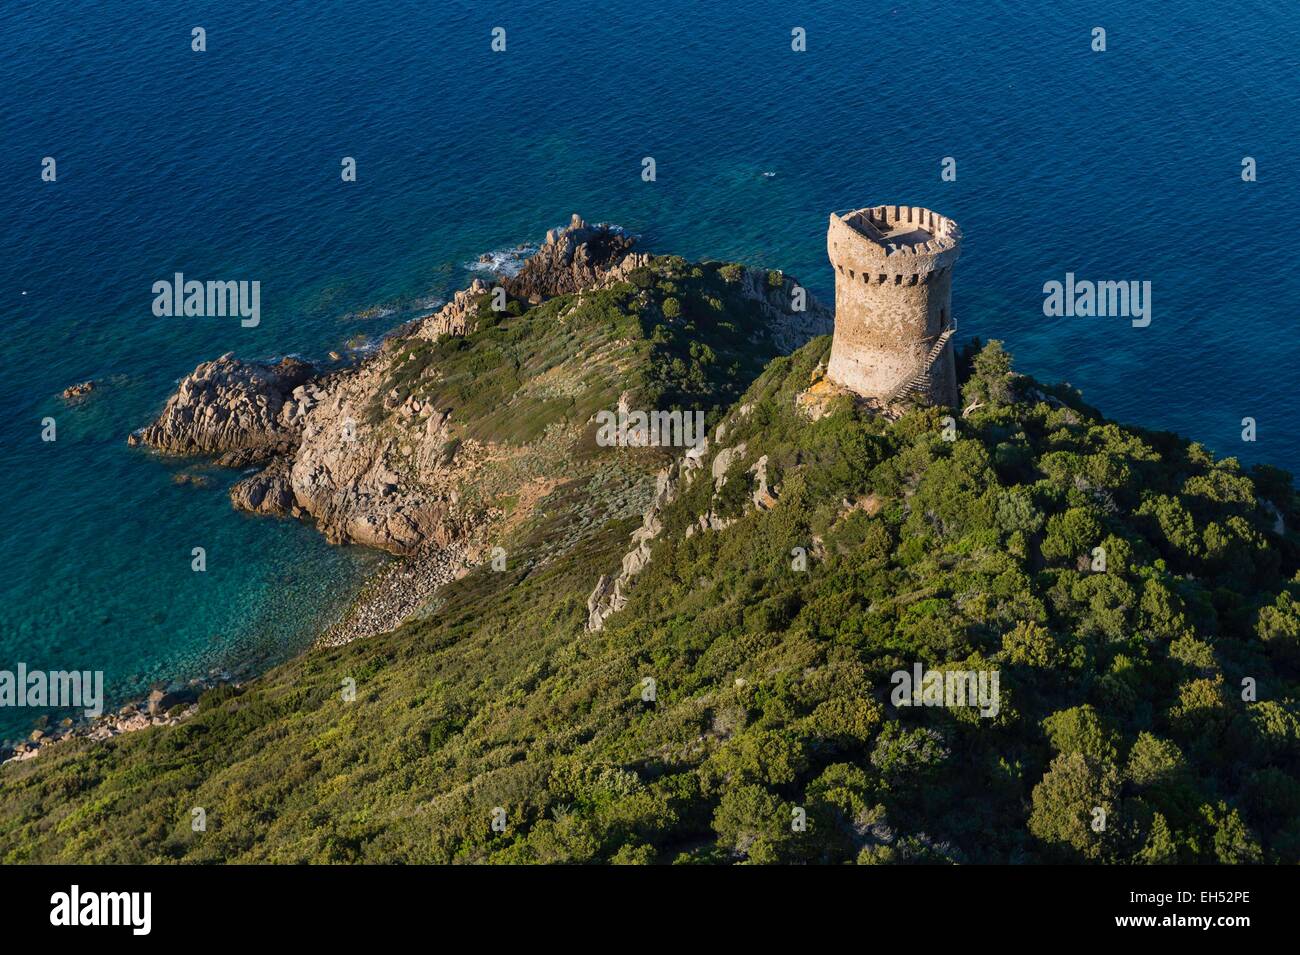 France, Corse du Sud, south of Ajaccio, Serra di Ferro village, tower of Capu di Muru (aerial view) Stock Photo